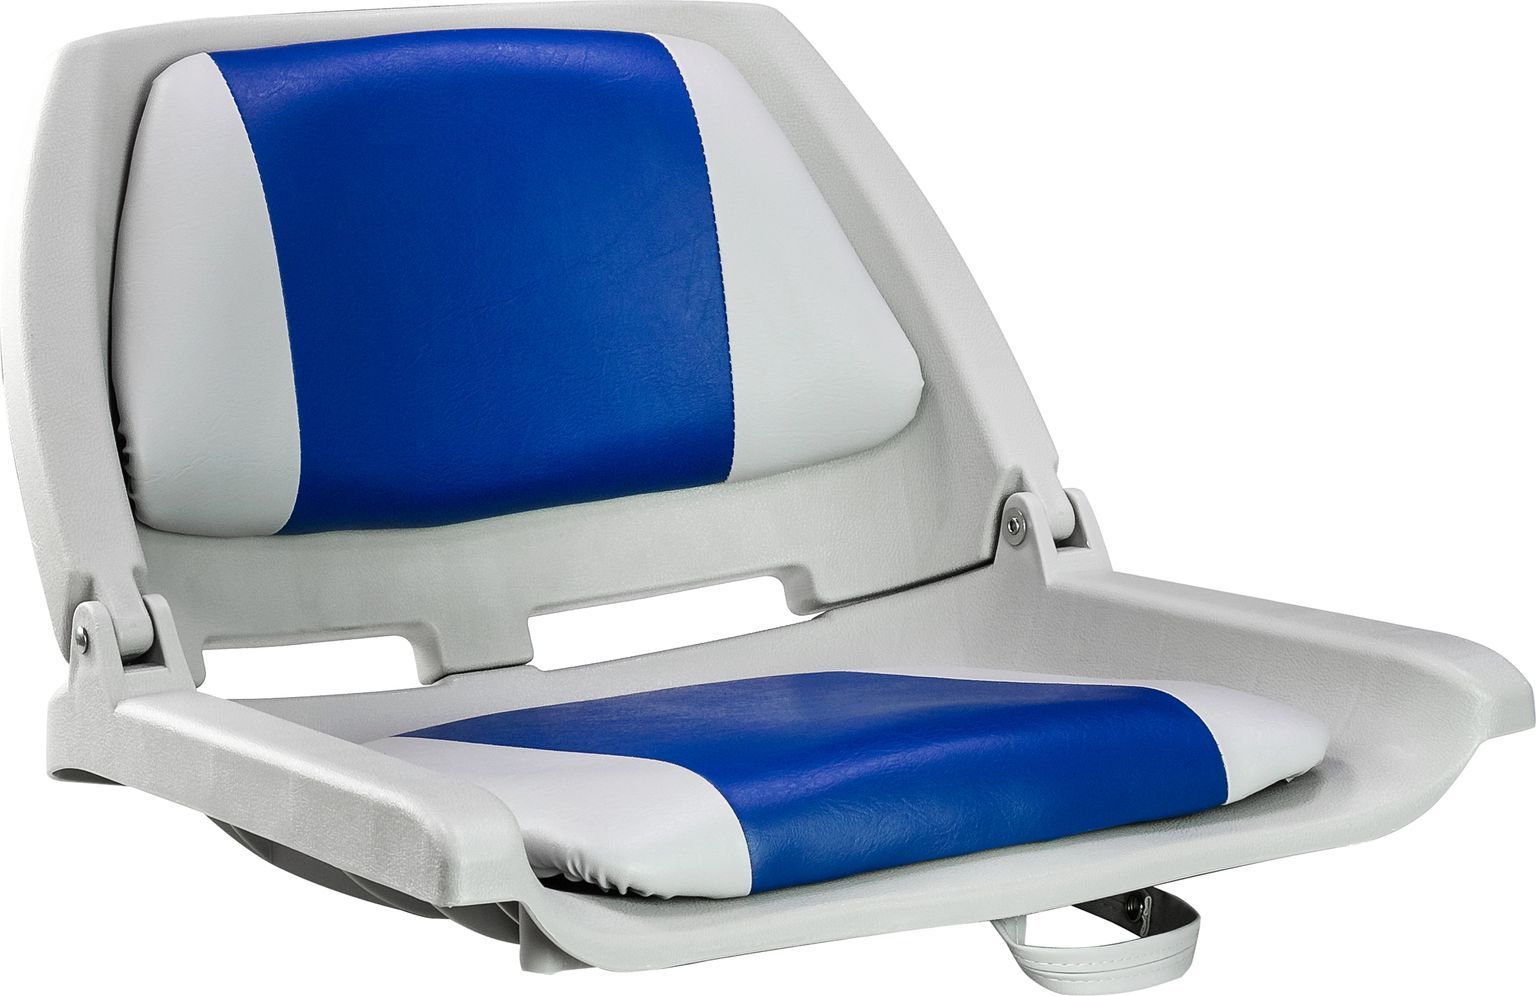 Кресло пластмассовое складное с подложкой Molded Fold-Down Boat Seat,серый/голубой 75109GB кресло пластмассовое складное с подложкой deluxe all weather seat белый чёрный 75113wc